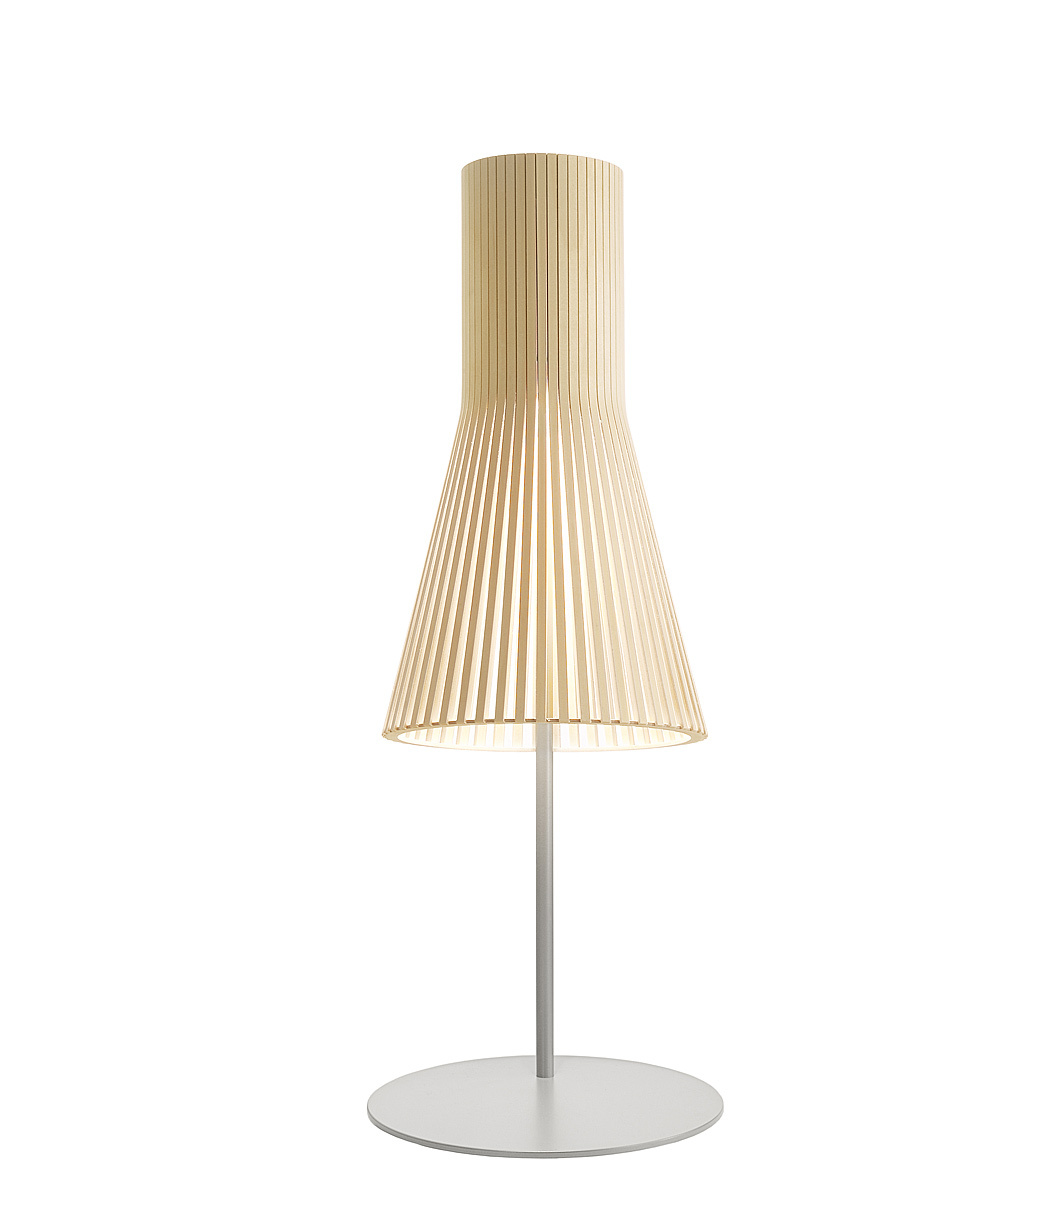 Lampe de table Secto 4220 est disponible en bouleau naturel